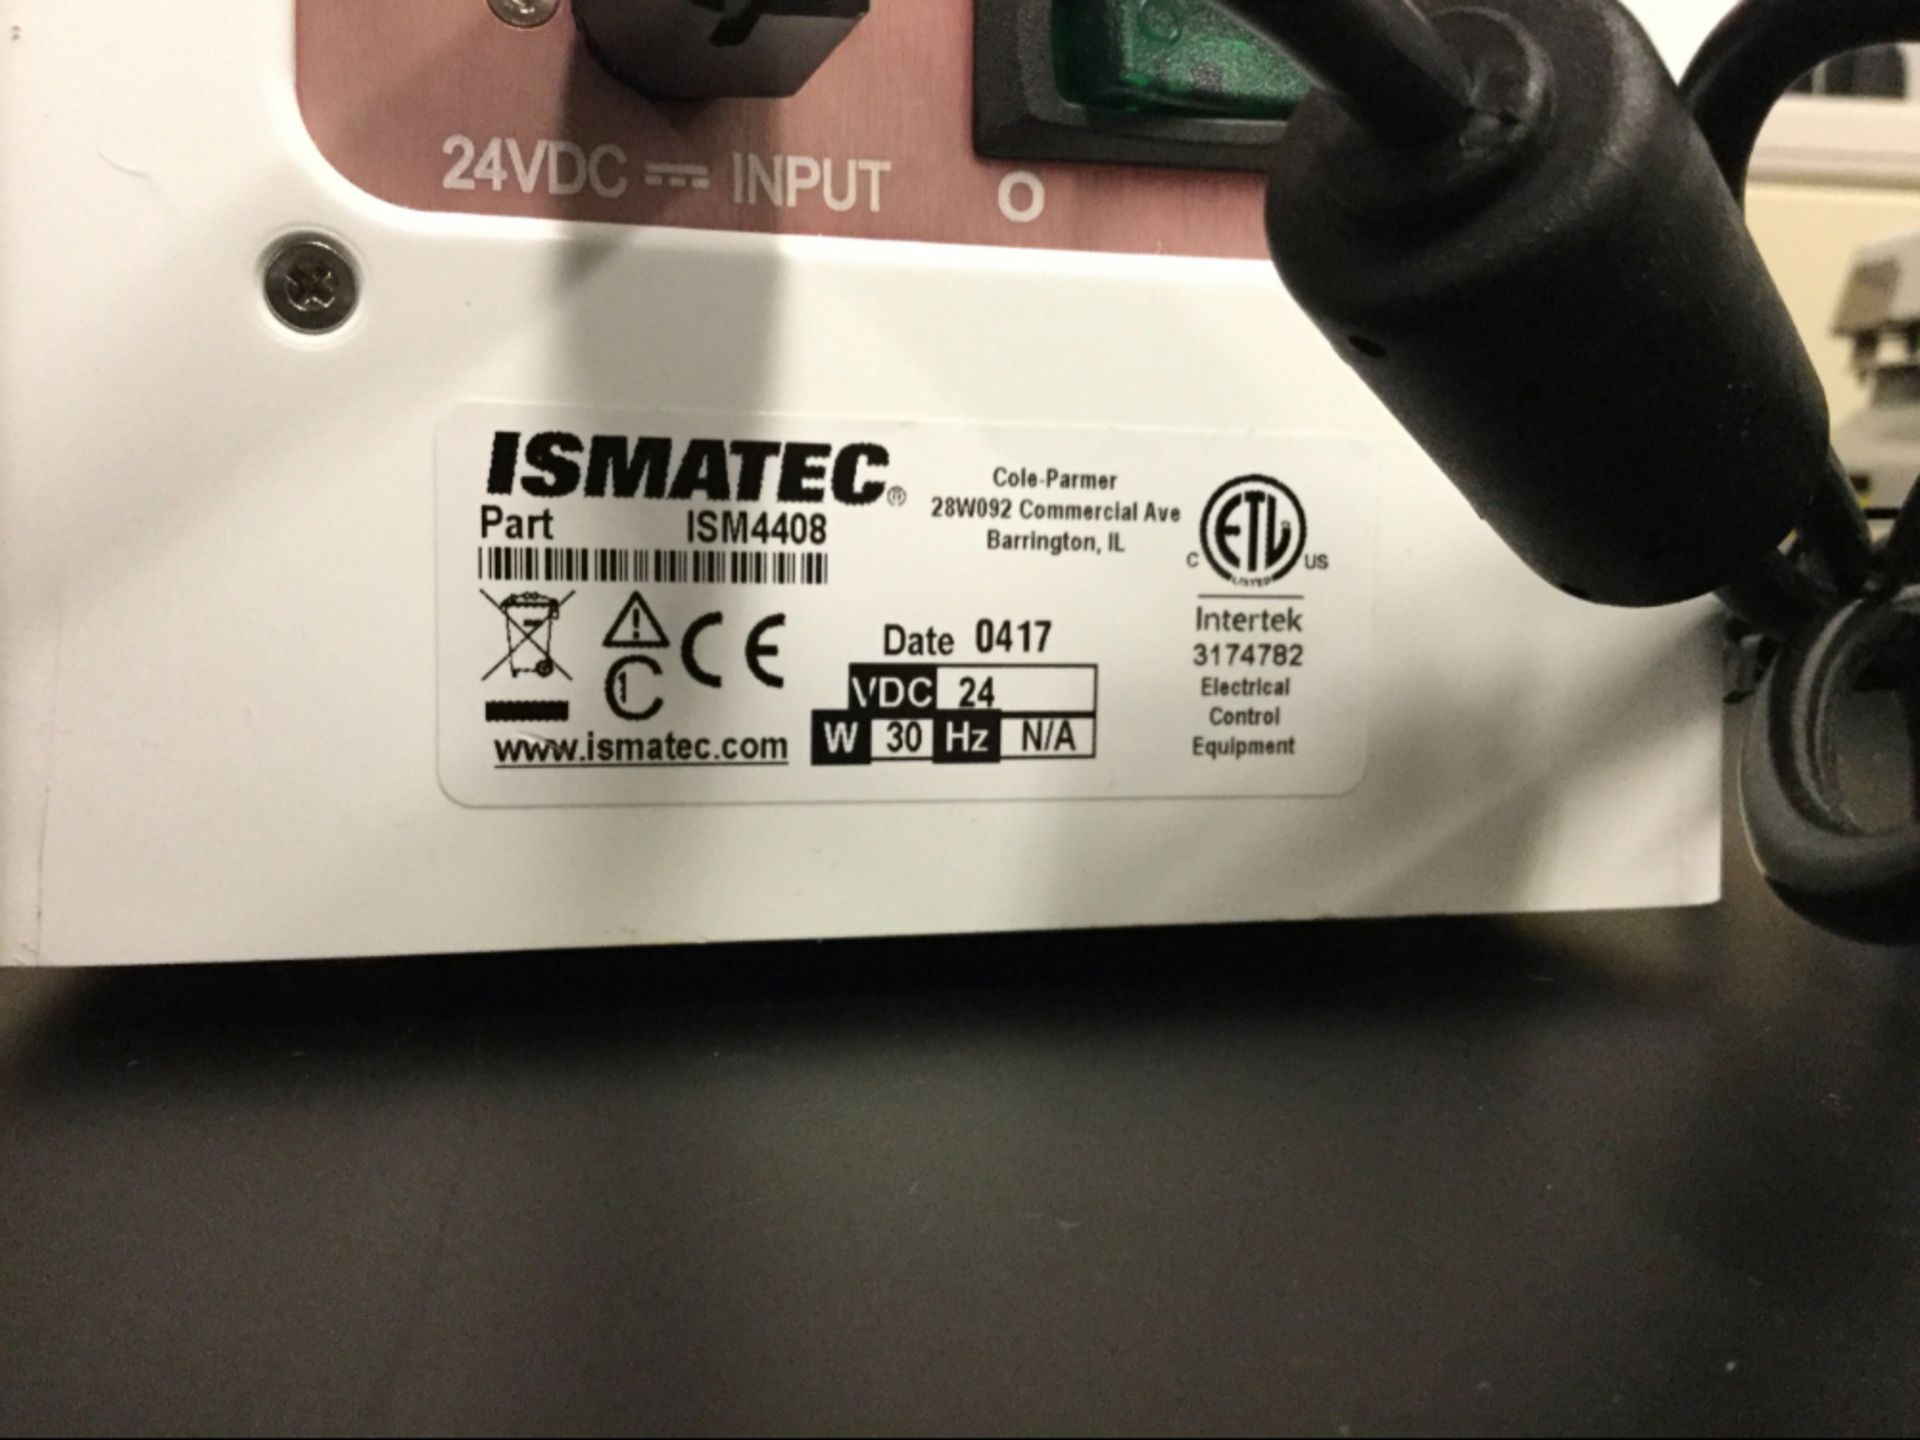 Ismatec ISM4408 Digital Peristaltic Pump - Image 2 of 2